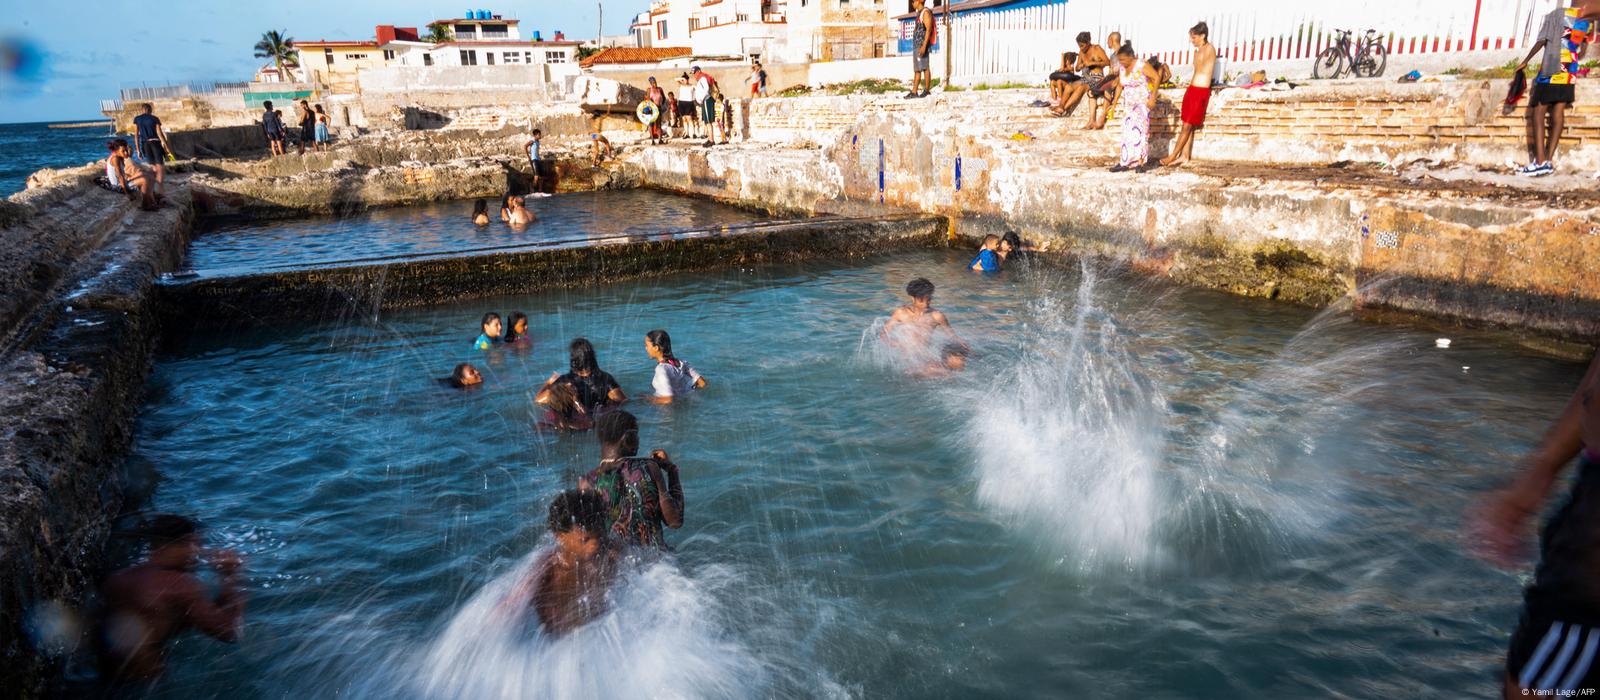 Die heute verlassenen und mit Meerwasser gefüllten Pools wurden in der ersten Hälfte des 20. Jahrhunderts von reichen kubanischen Familien gebaut. | Bildquelle: DW © Yamil LAGE | Bilder sind in der Regel urheberrechtlich geschützt